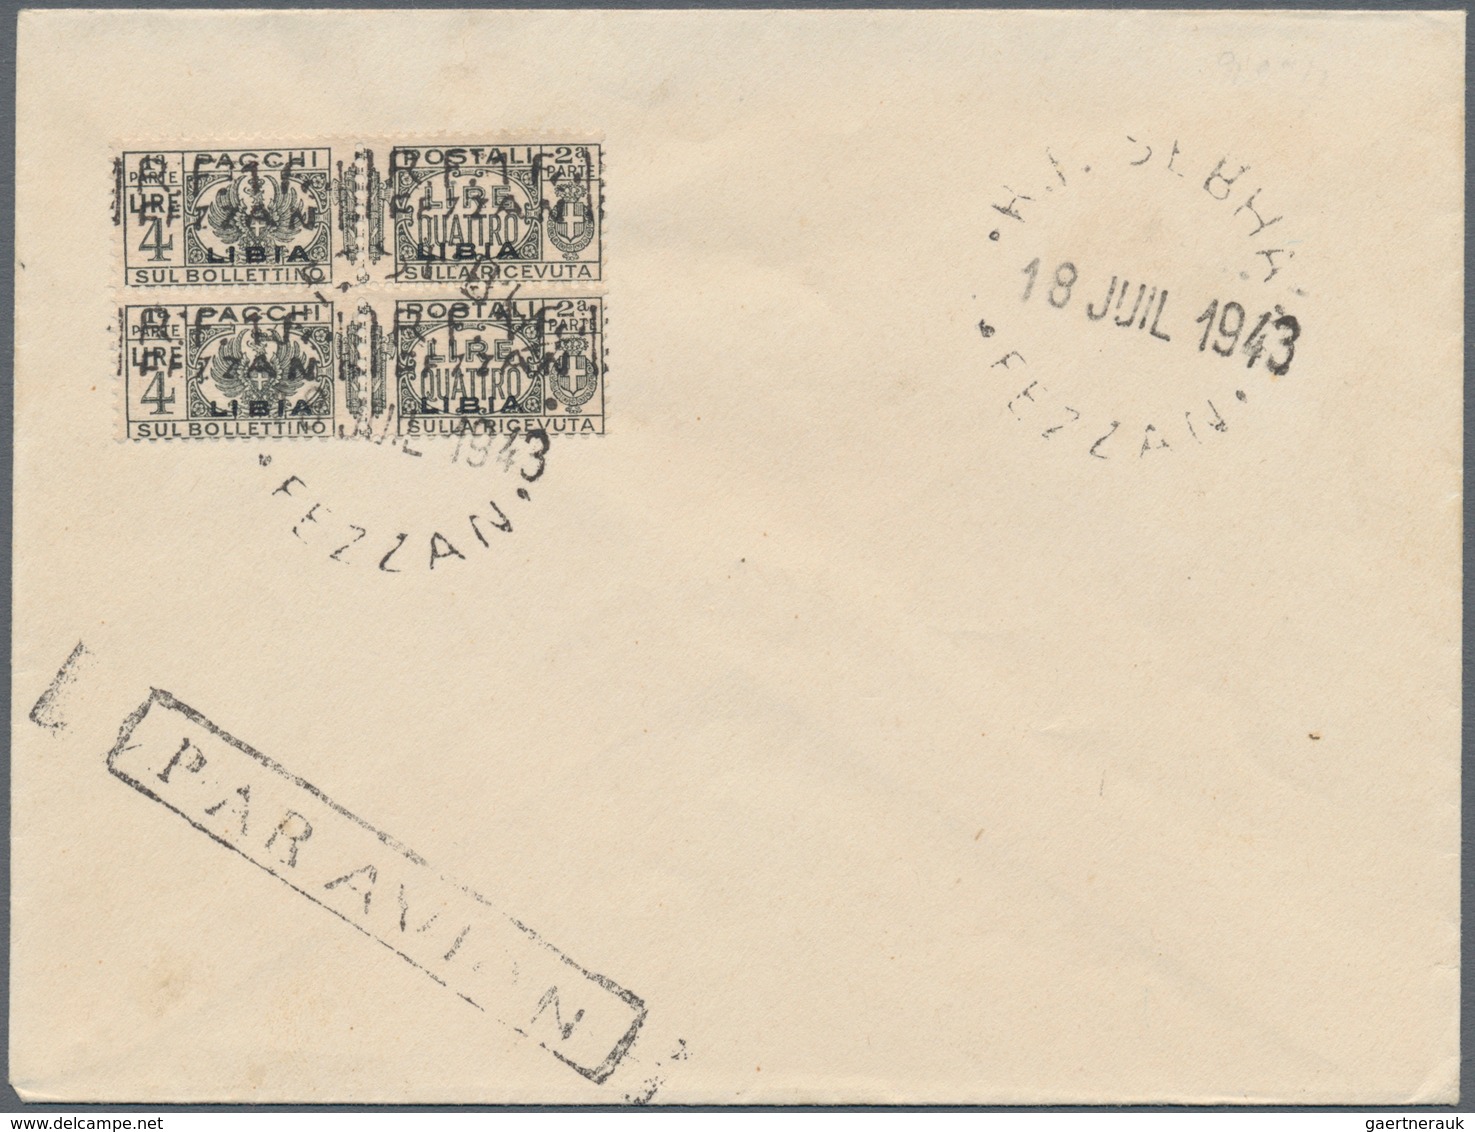 Fezzan - Paketmarken: 1943, French Occupation, Revaluation overprints on Libya parcel stamps, 1fr. o